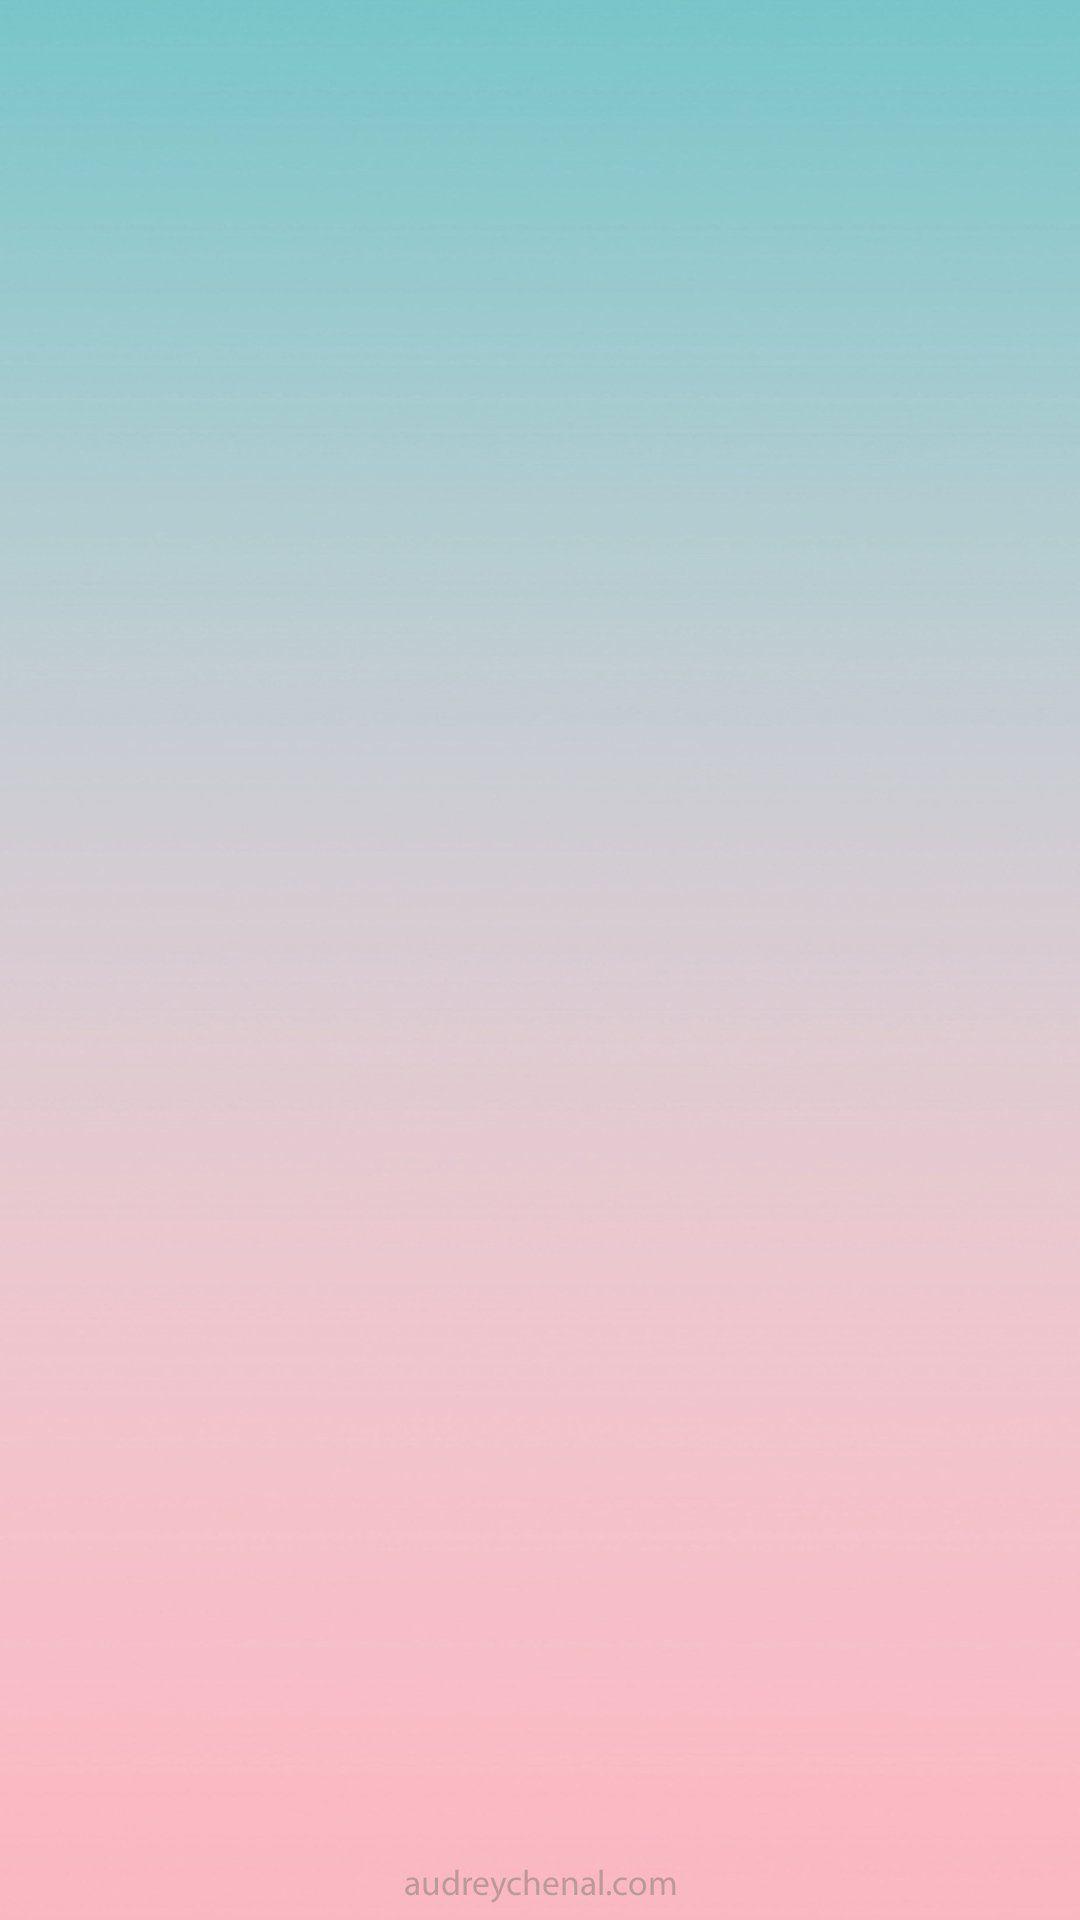 Hình nền iphone hiện đại màu xanh lam hồng gradient ombre 1080x1920 của audrey chenal - Audrey Chenal